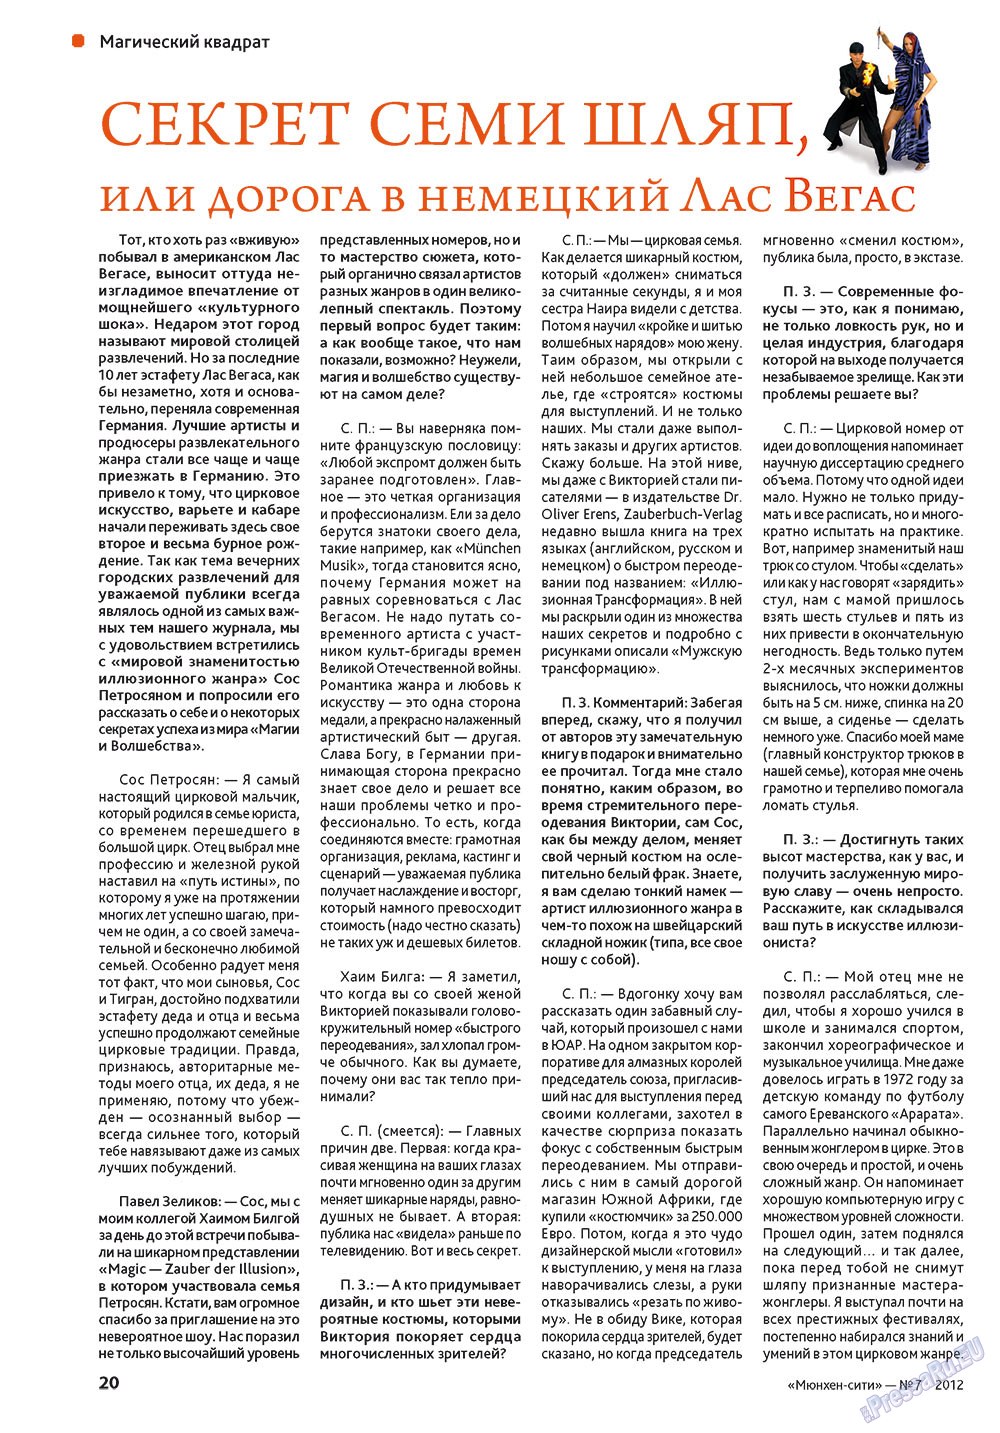 Мюнхен-сити (журнал). 2012 год, номер 7, стр. 20